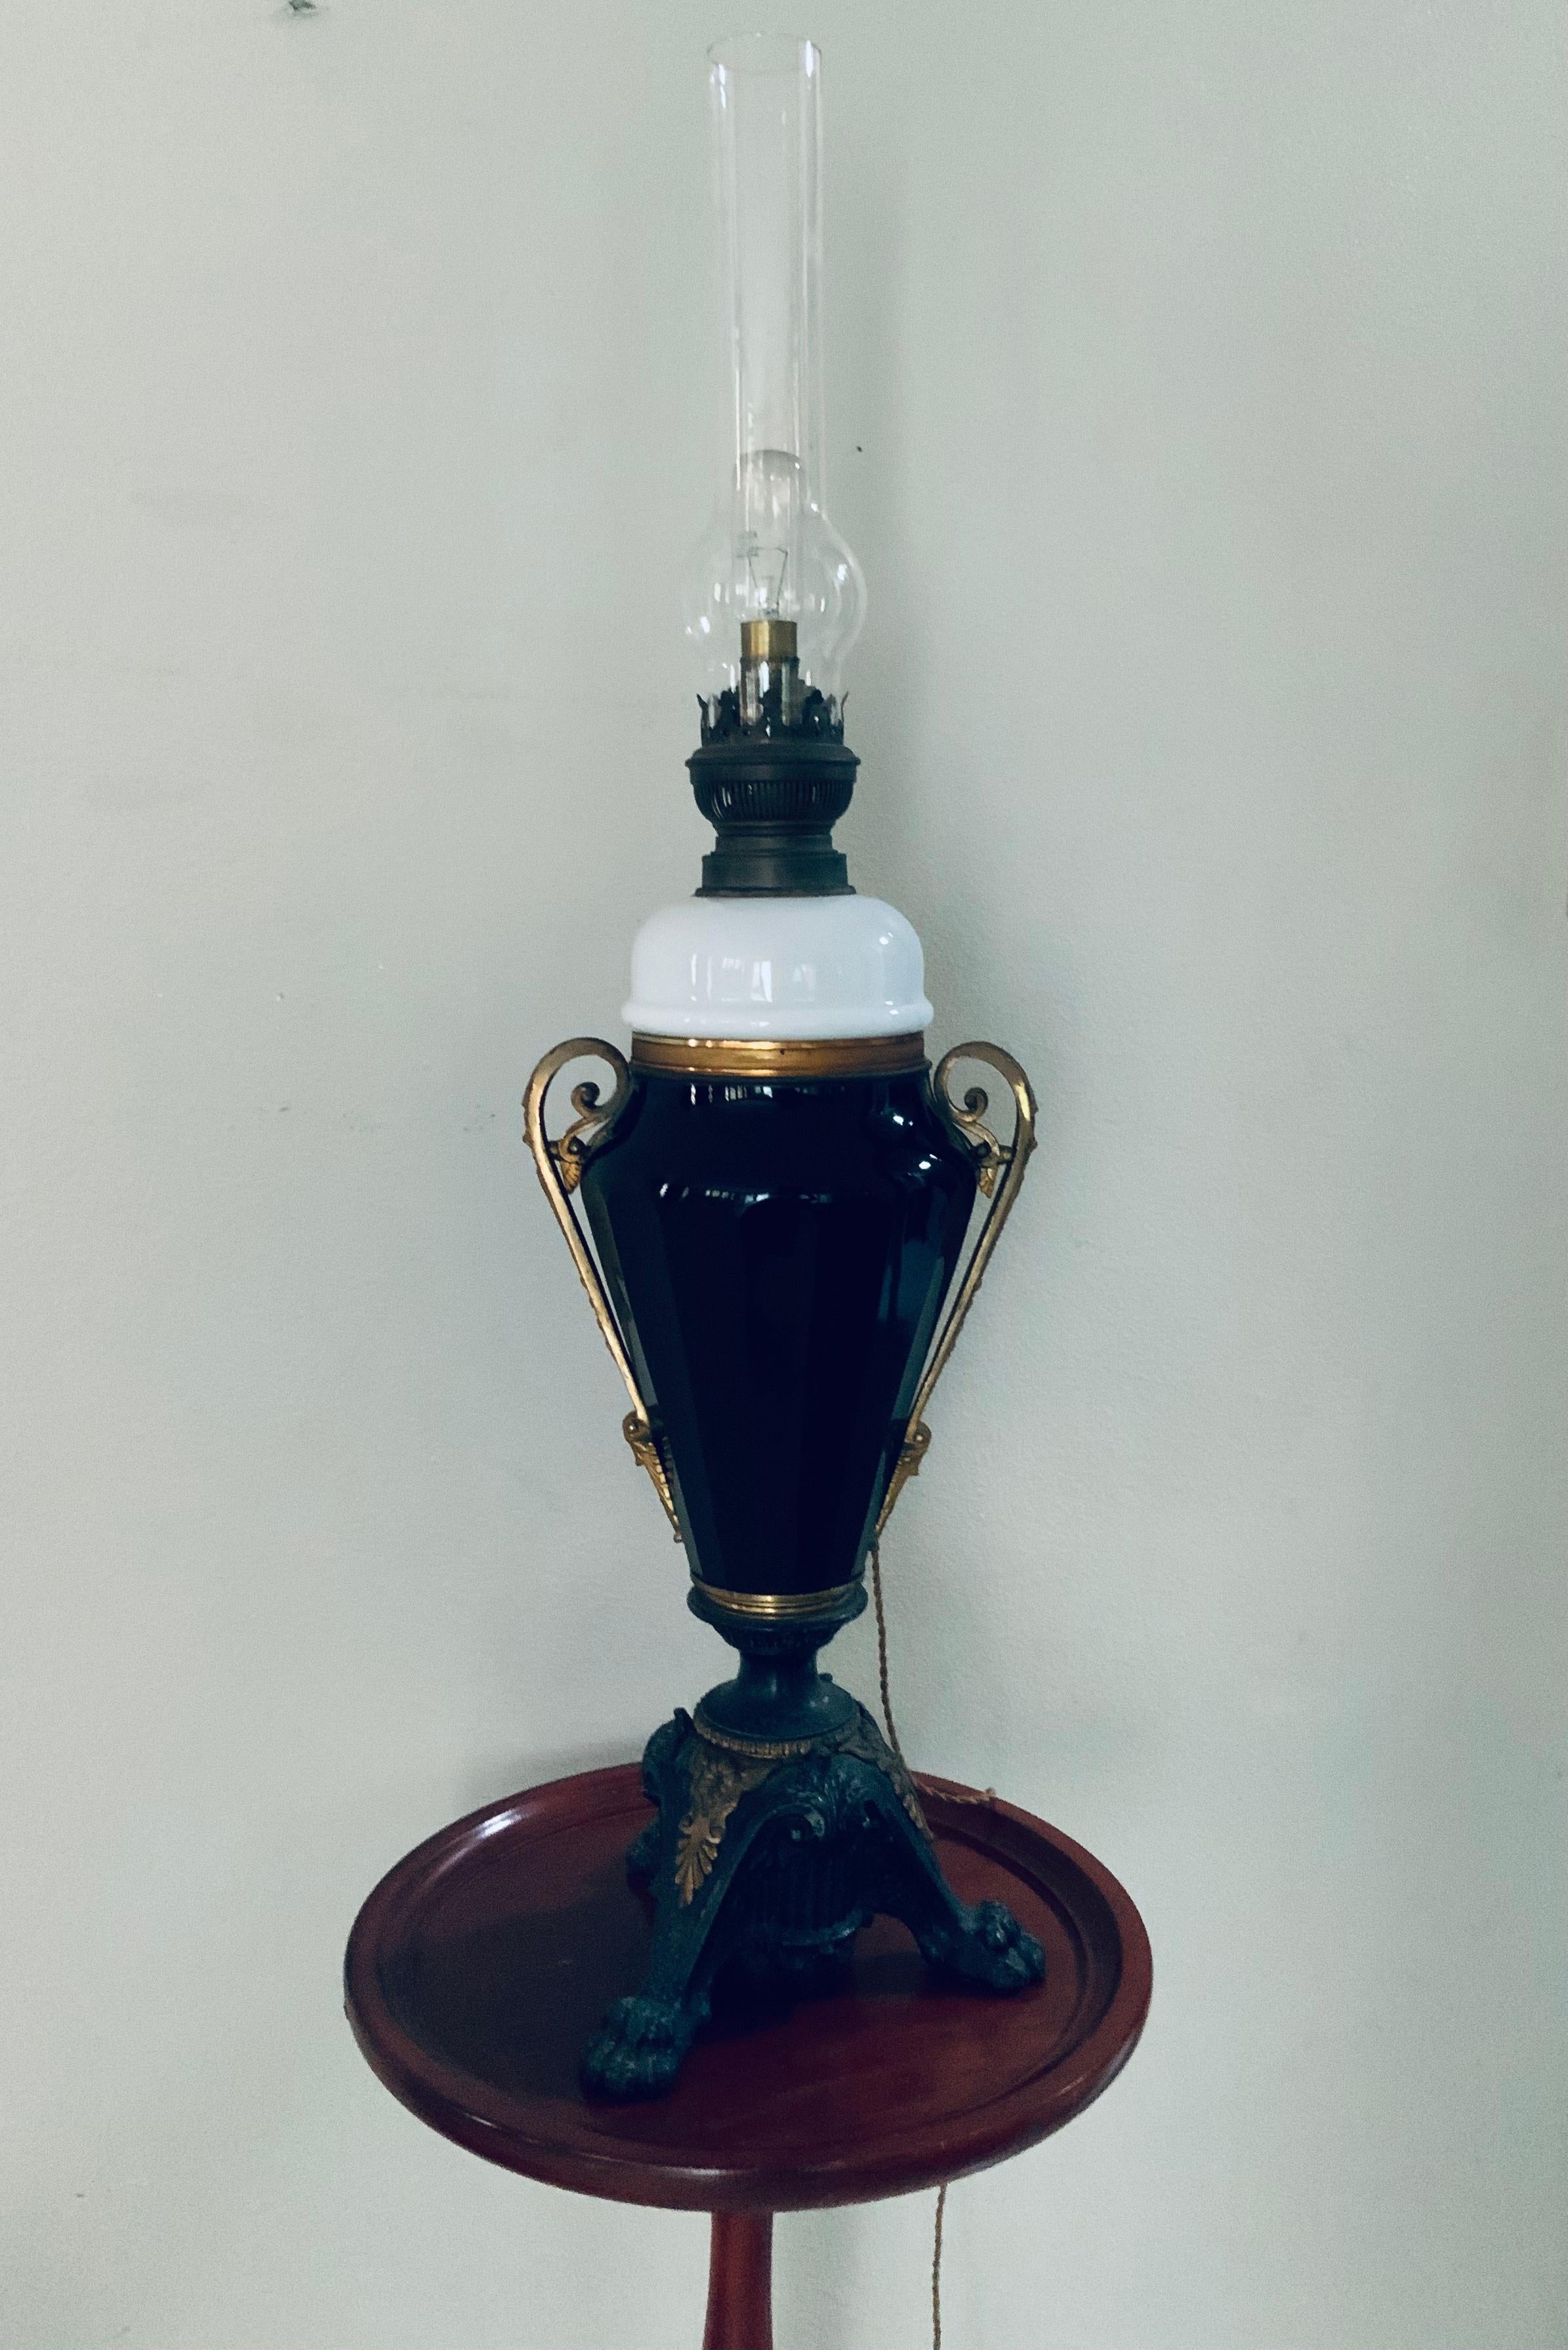 Il s'agit d'une grande lampe à huile de style Empire qui a été convertie en lampe électrique. Il se compose d'un abat-jour transparent de lampe cheminée de forme cylindrique allongée, fixé à un support de brûleur en laiton ; ce dernier est à son